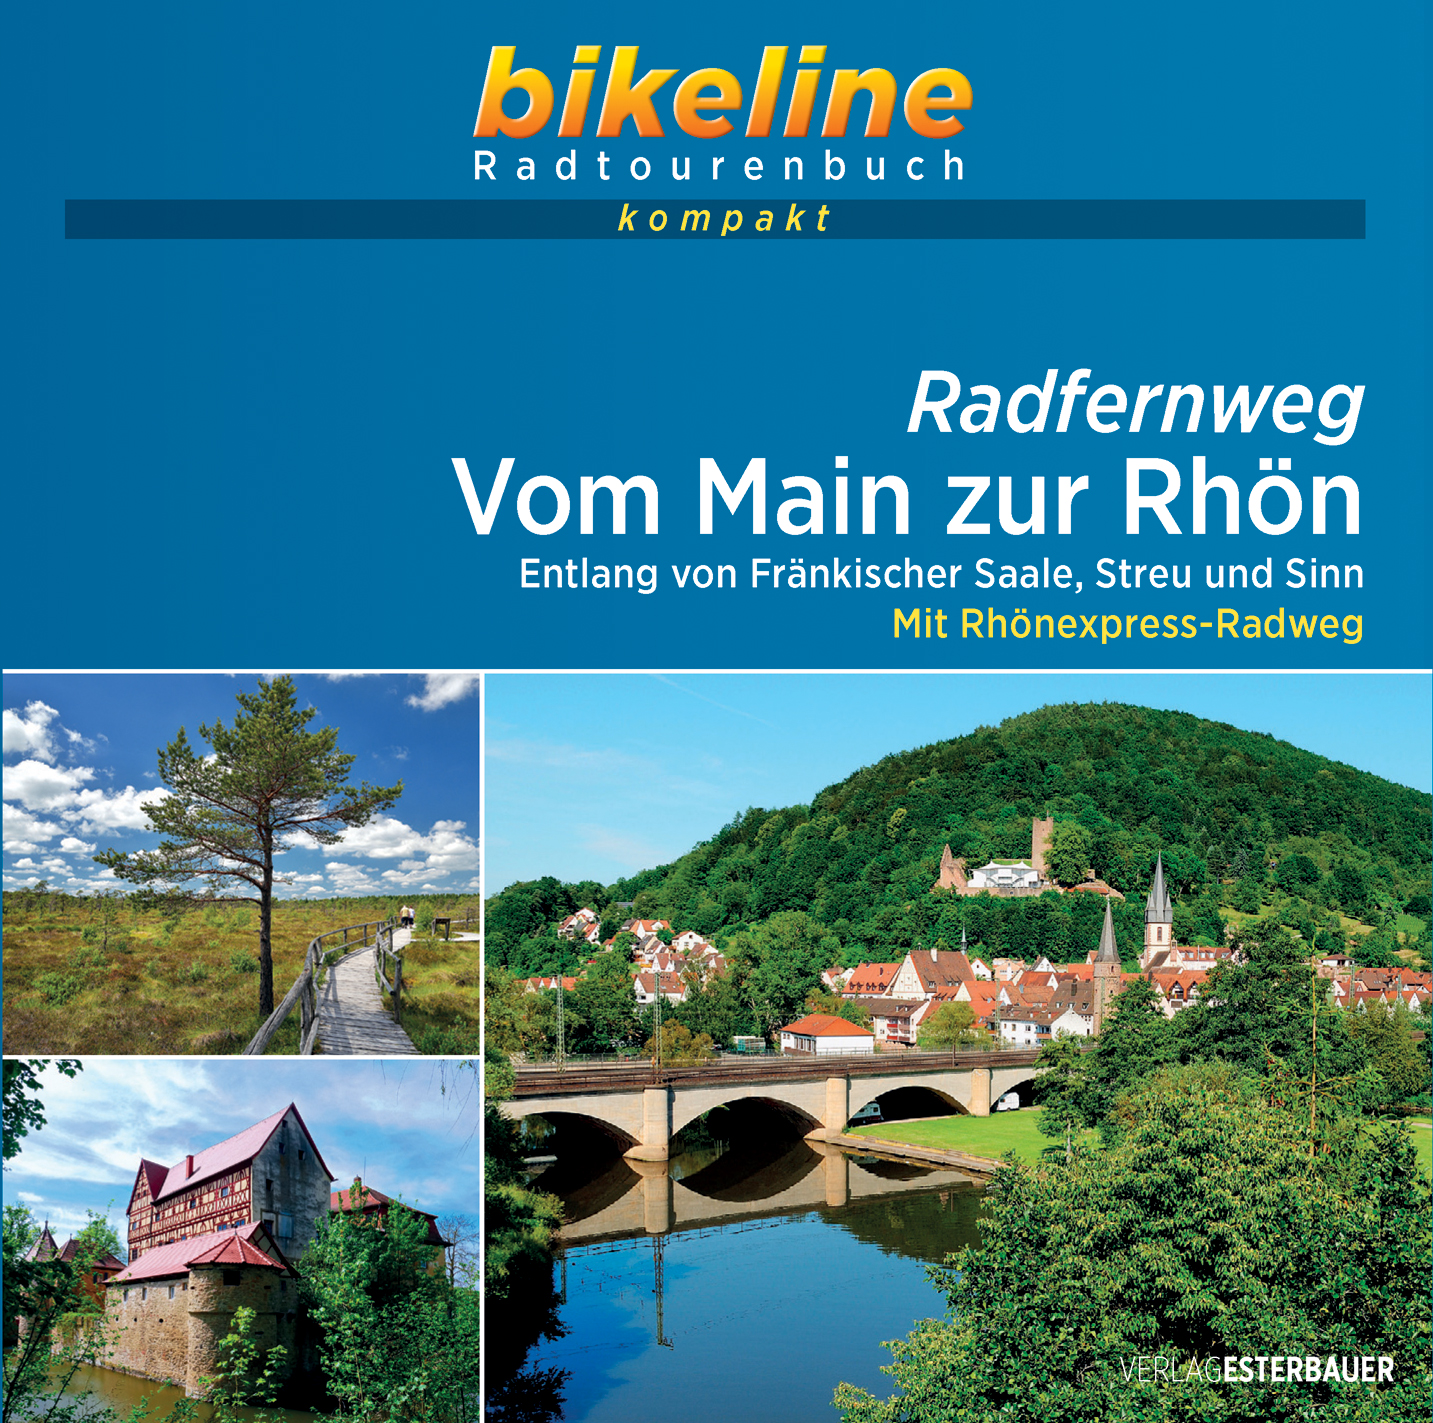 Online bestellen: Fietsgids Bikeline Radtourenbuch kompakt Vom Main zur Rhön | Esterbauer